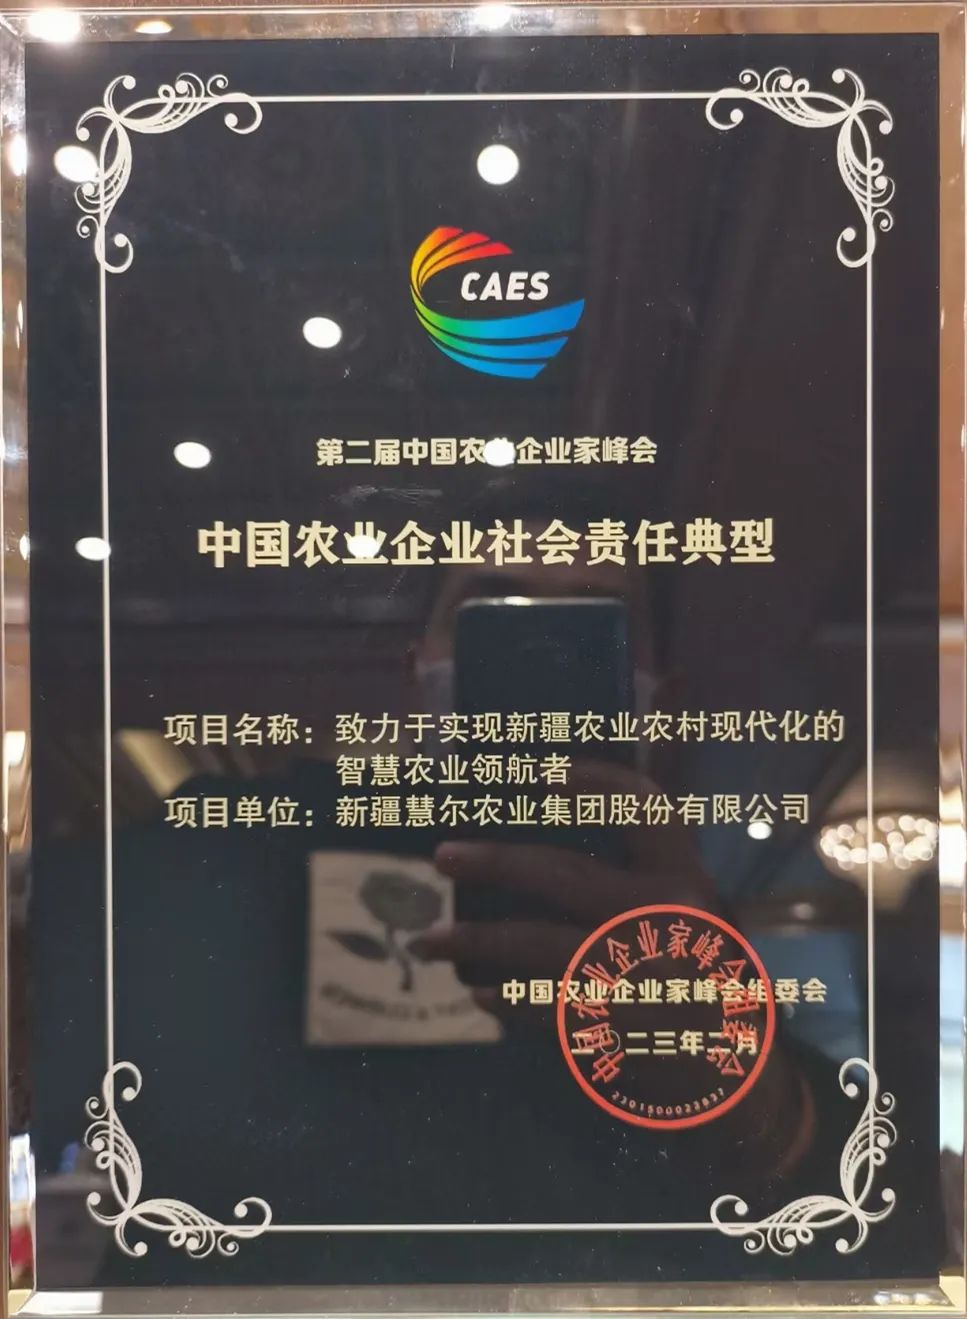 慧尔集团荣获“中国农业企业社会责任典型”